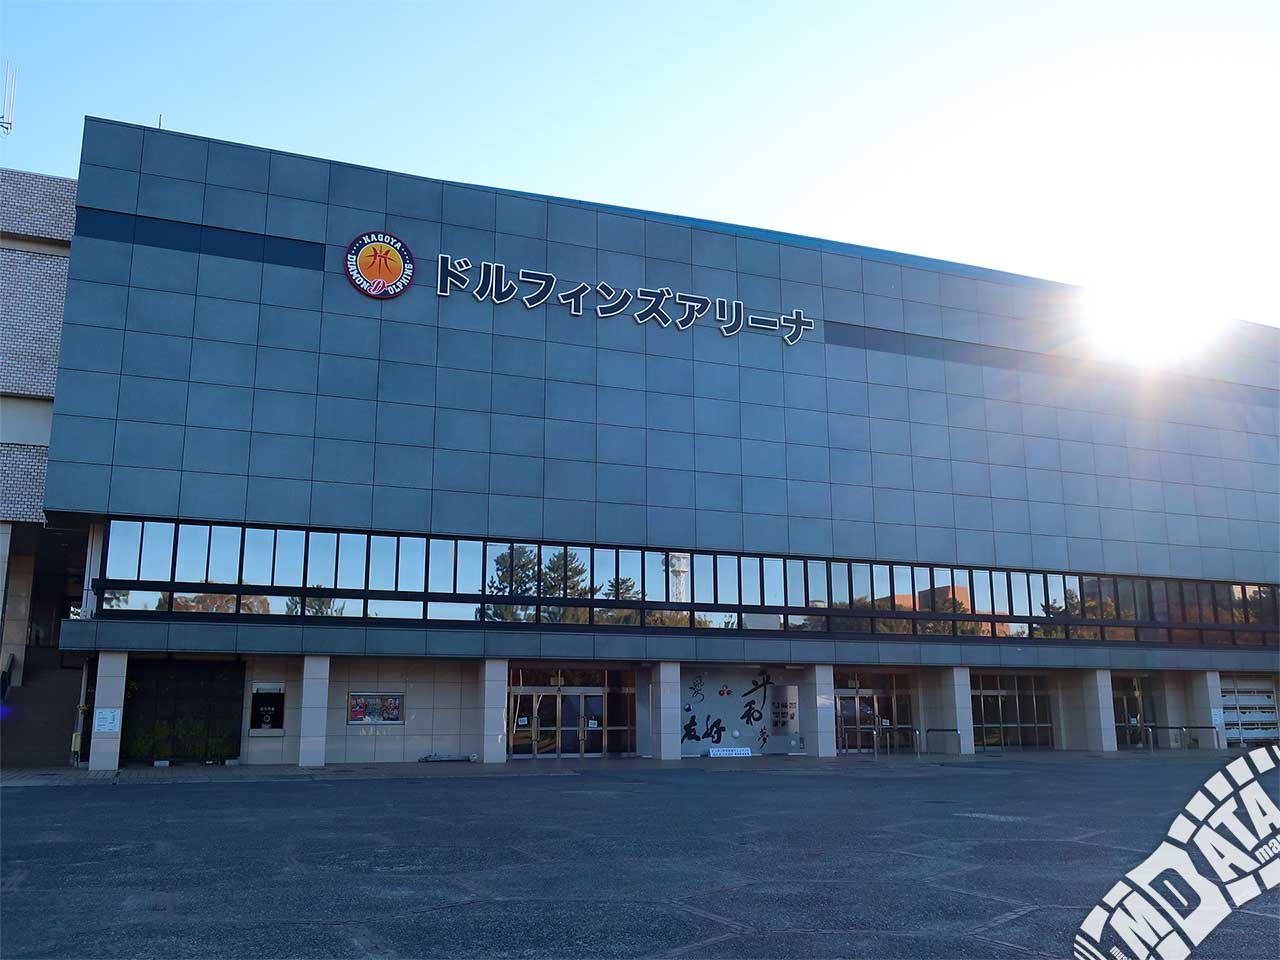 ドルフィンズアリーナ（愛知県体育館）の写真 撮影日:2018/11/28 Photo taken on 2018/11/28